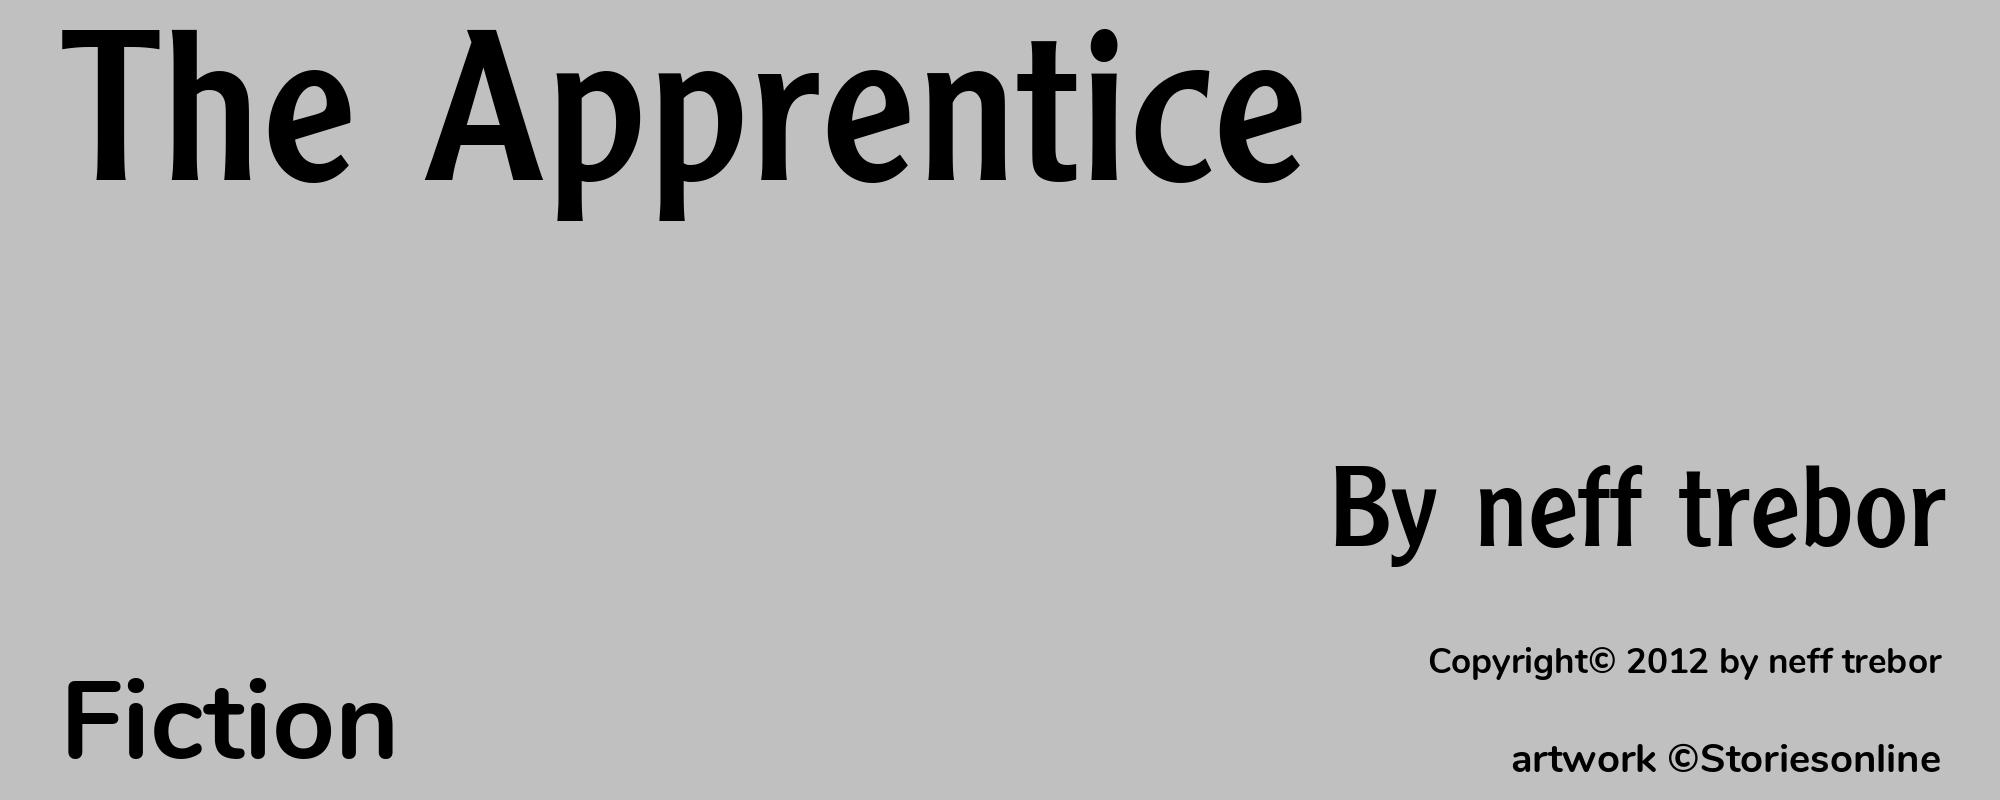 The Apprentice - Cover